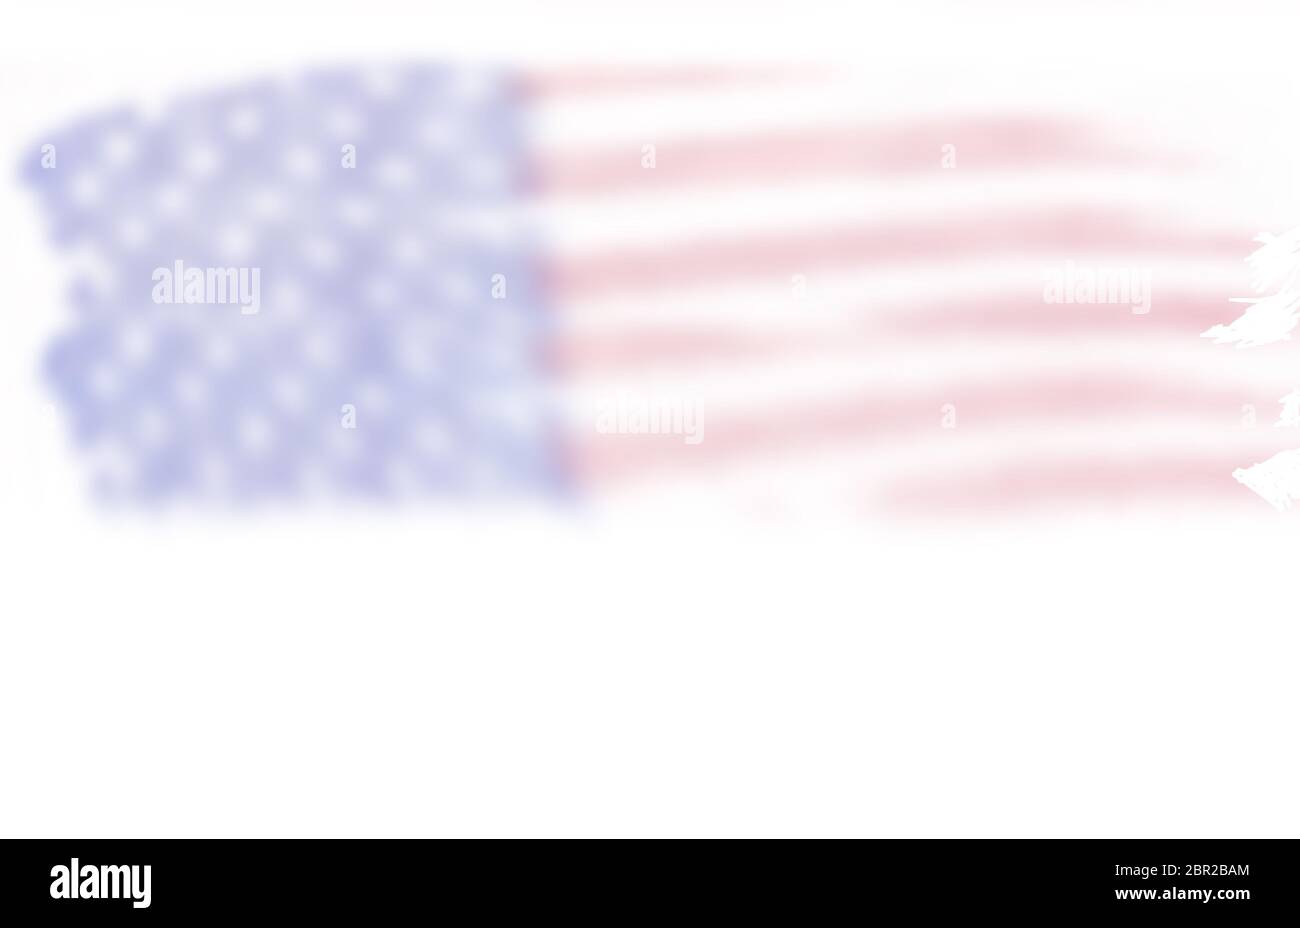 Verschwommene, verblasste Darstellung der amerikanischen Flagge, USA, rot, weiß und blau für 4. Juli Feiertag, Patriotismus, Raum für Text, Raum für Kopie, USA Stockfoto